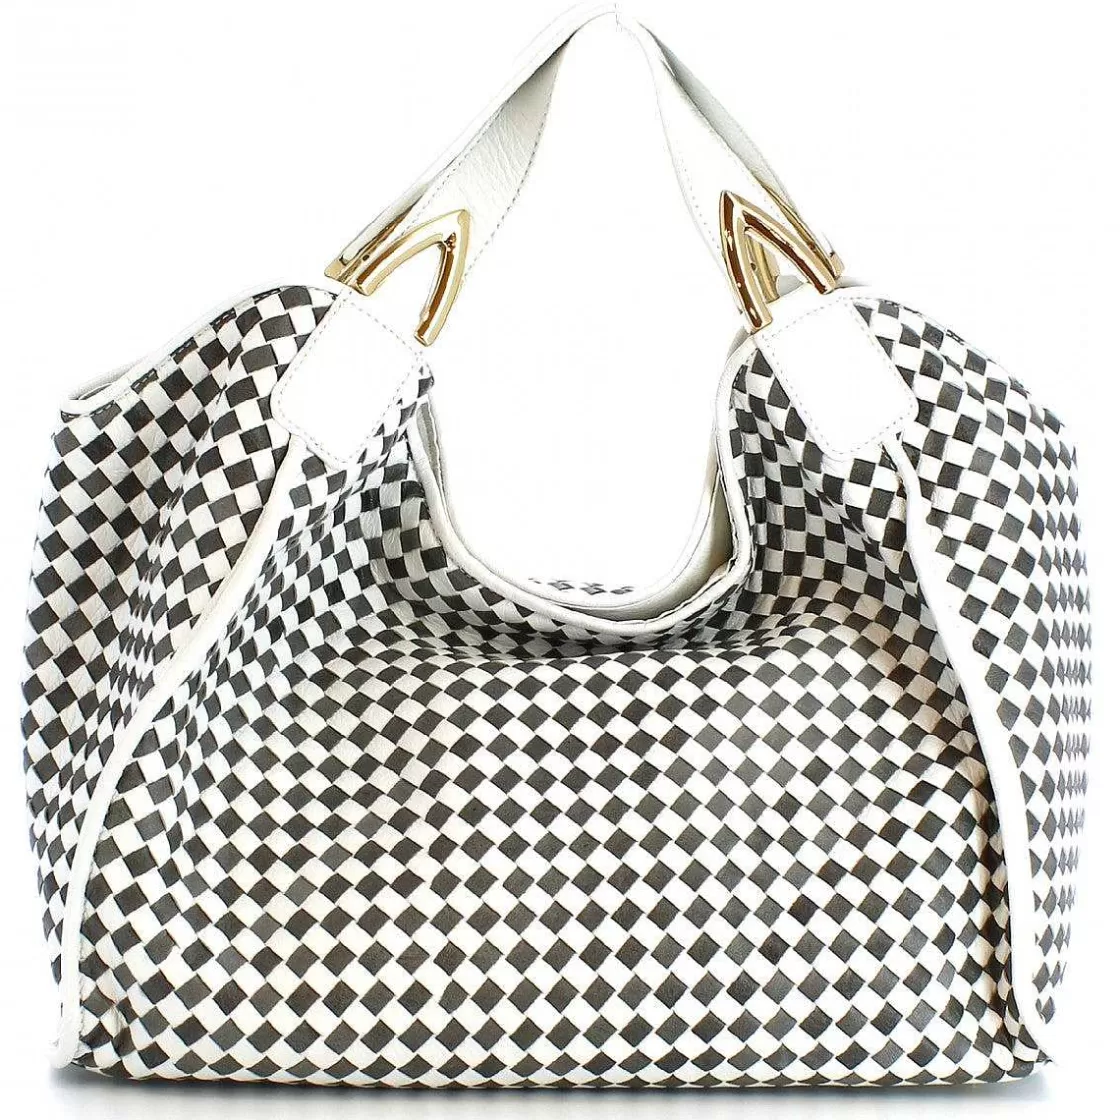 Leonardo Handmade Women'S Handbag In Gray White Woven Leather Discount